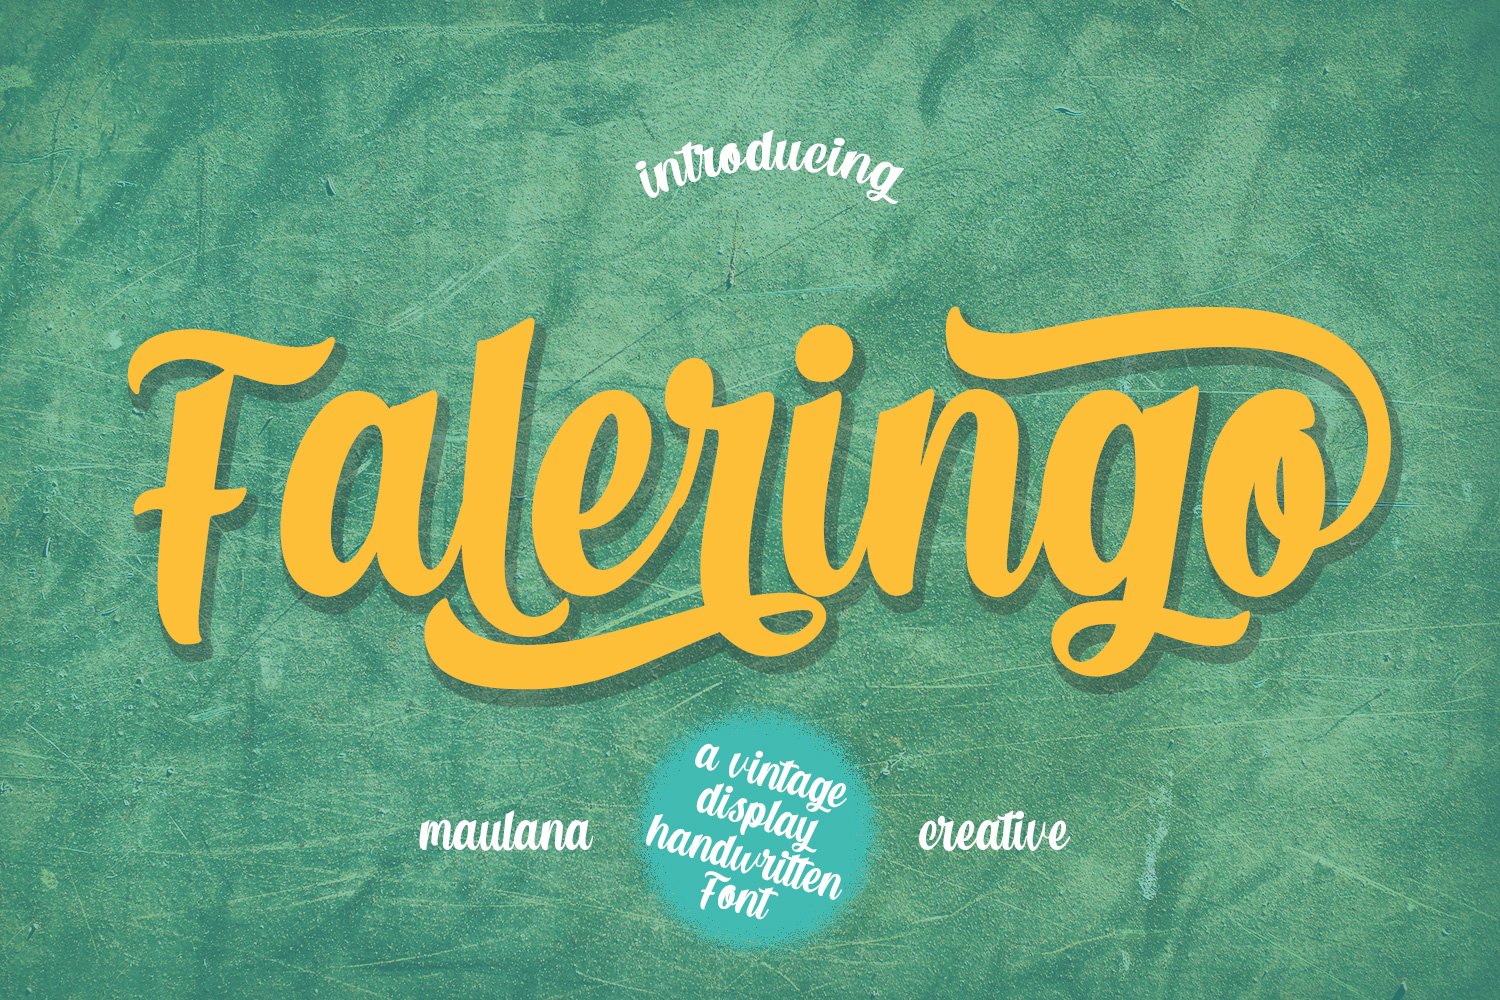 Faleringo Retro Script Font cover image.